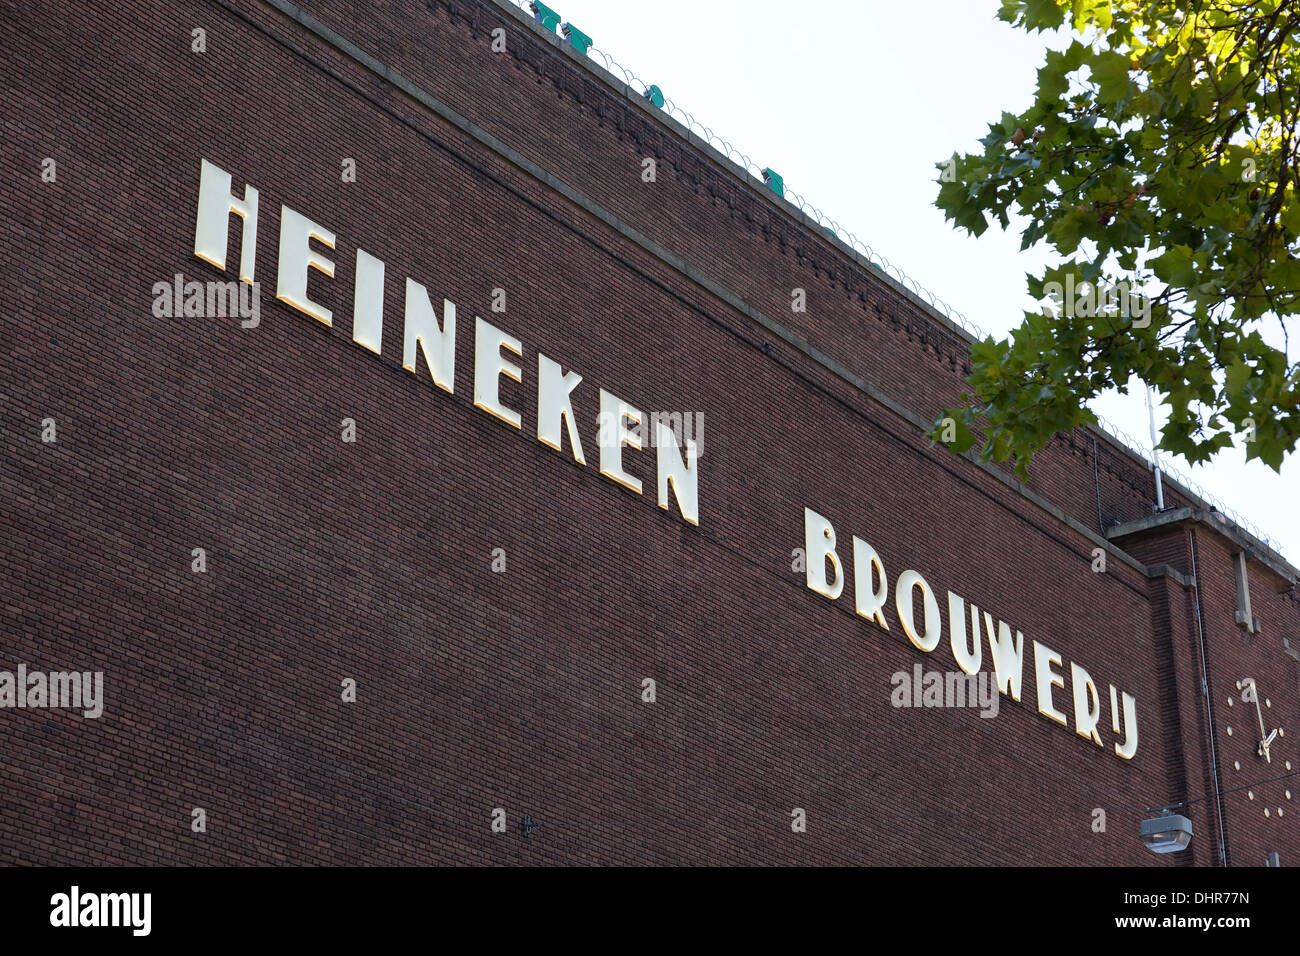 Facade of the Heineken building in Amsterdam, Netherlands Stock Photo